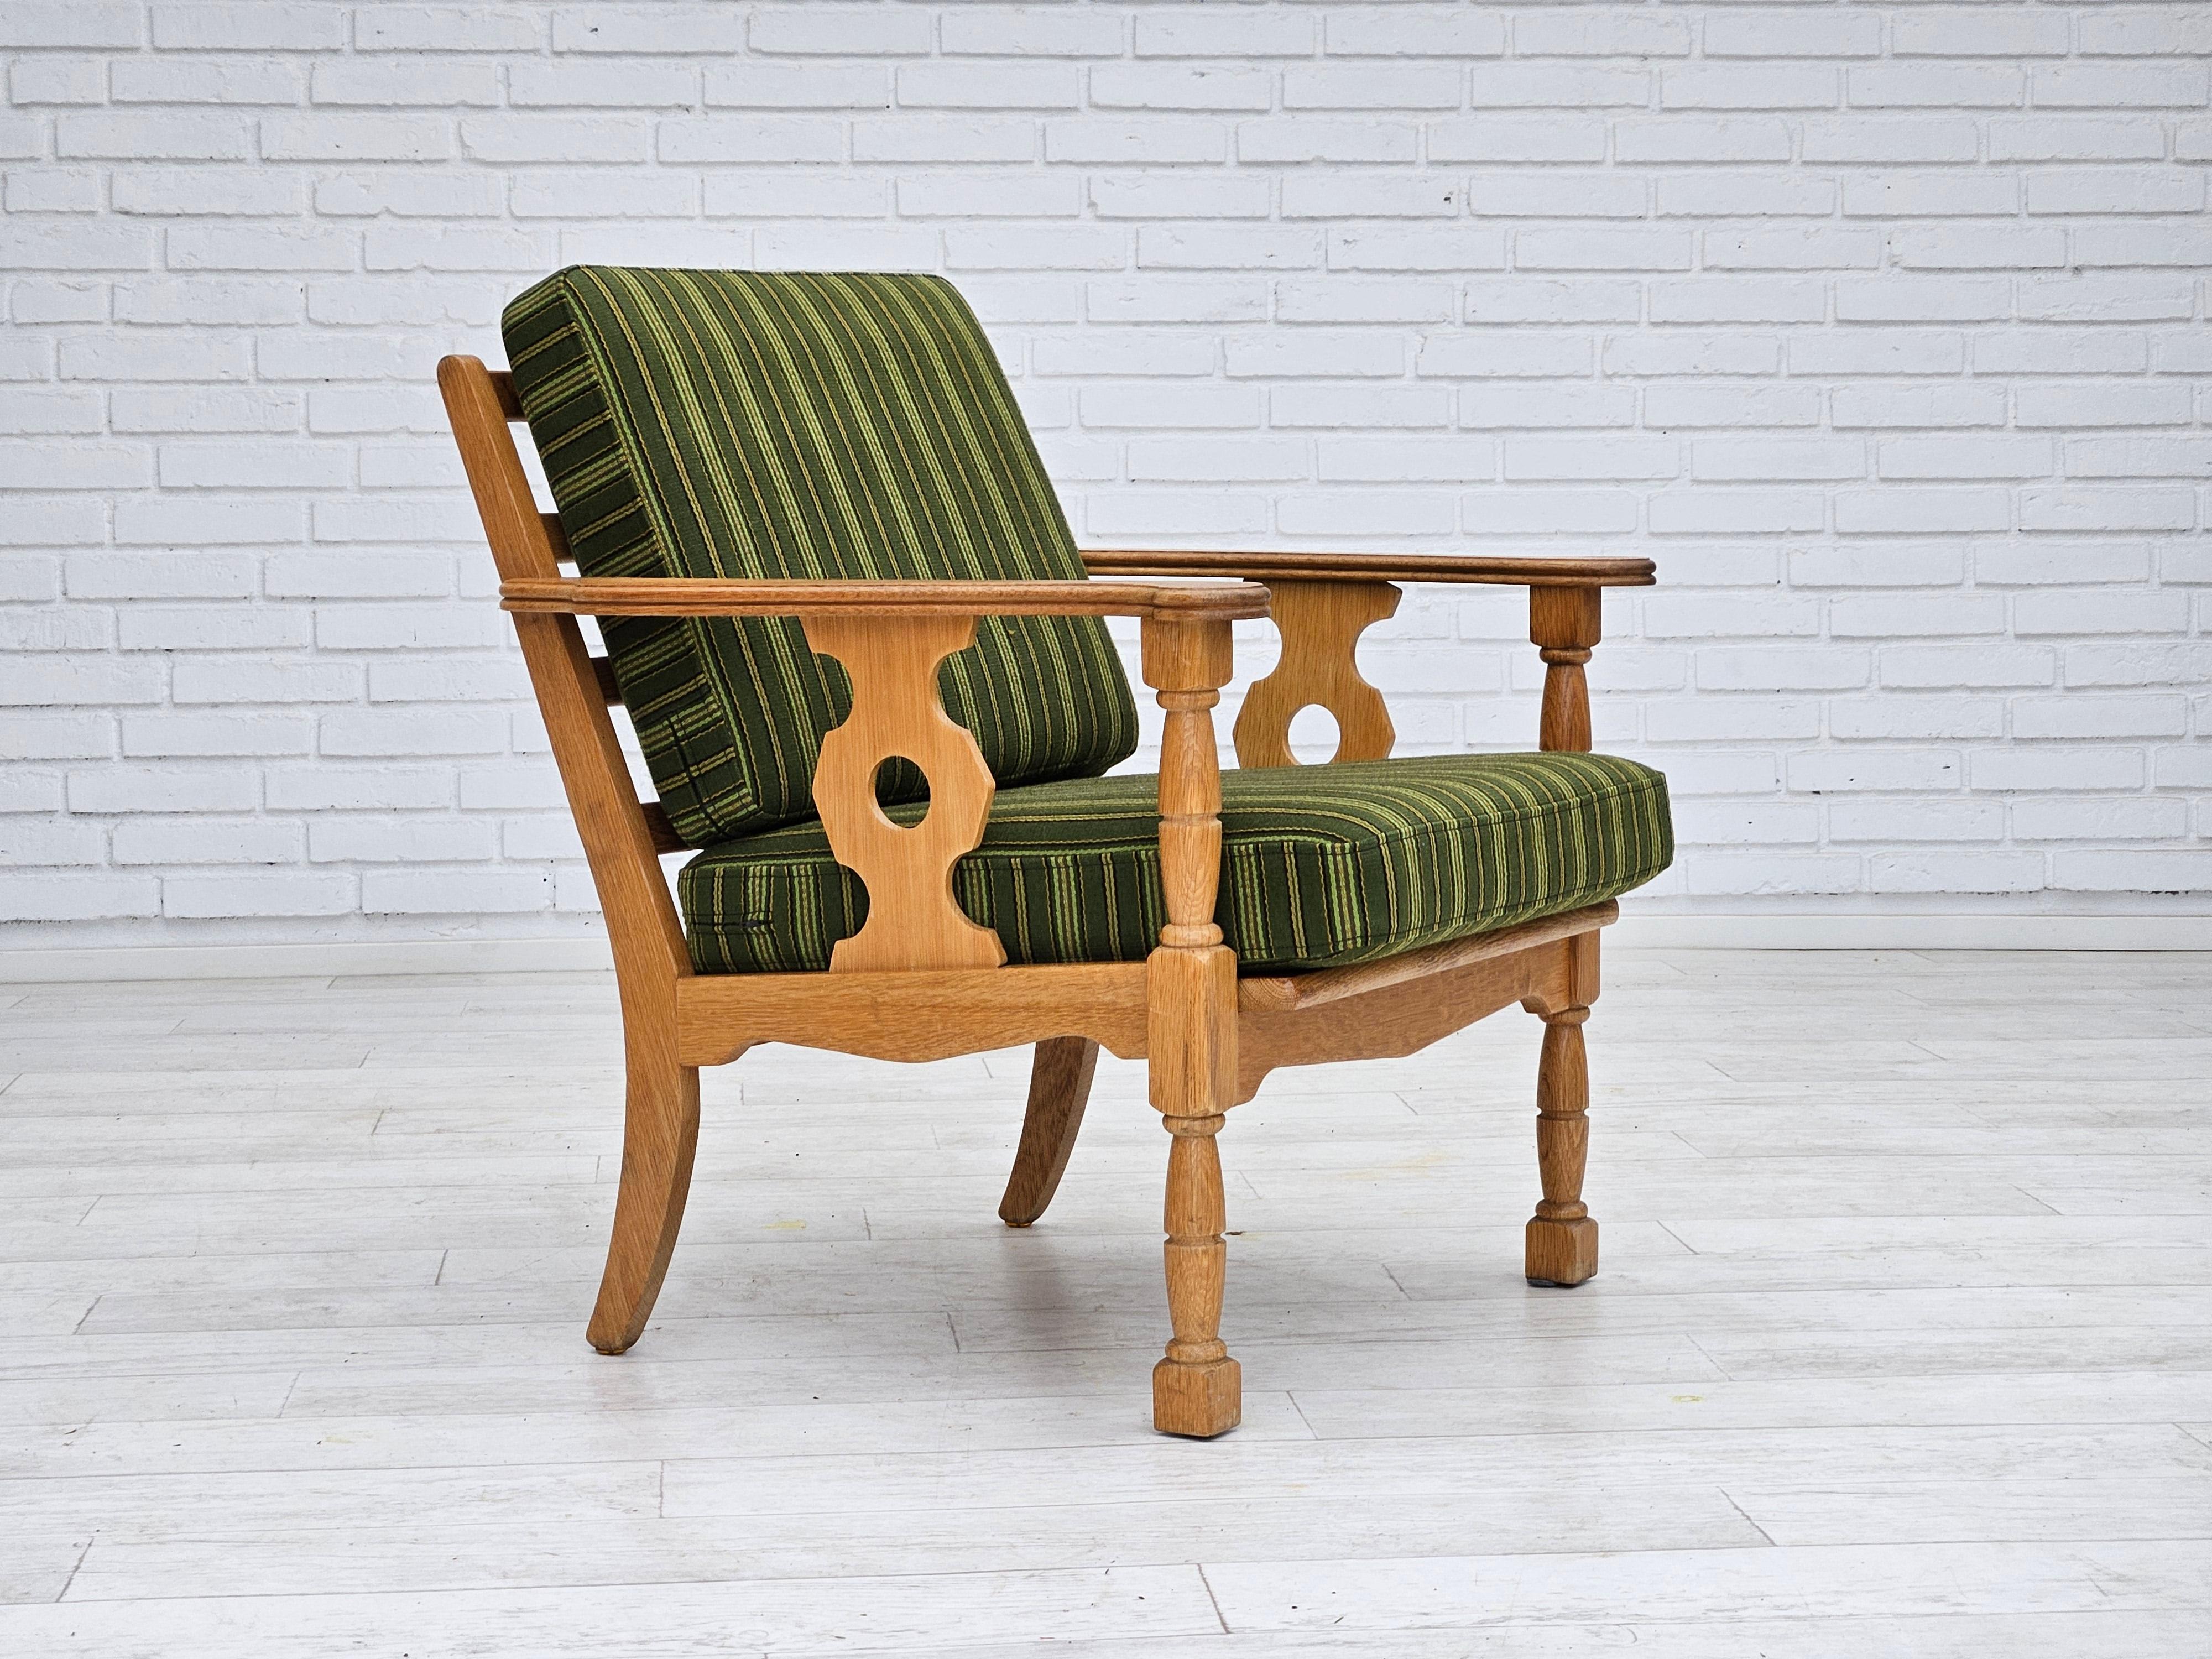 Fauteuil danois des années 1970 en très bon état d'origine : pas d'odeurs ni de taches. Meubles verts en tissu de laine, bois de chêne. Ressorts dans les coussins d'assise et de dossier. Fabriqué par un fabricant de meubles danois dans les années